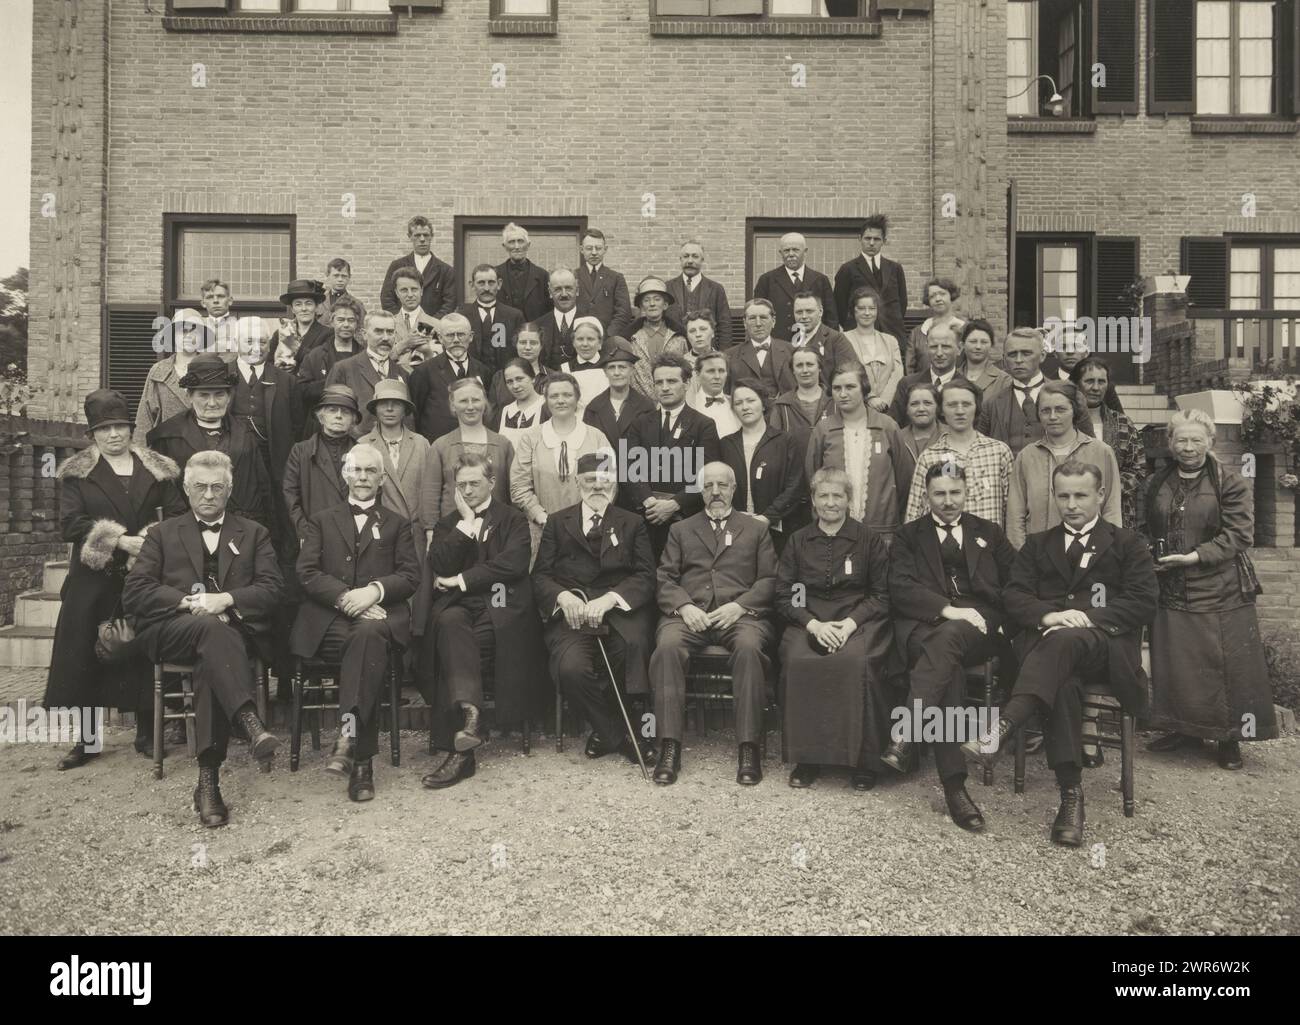 Gruppenporträt bei einer Konferenz in Amerongen 1927, möglicherweise mit Marie Breitner-Jordan, Vereenigde Foto-Büros Amsterdam, Amerongen, 1927, baryta Papier, Gelatinedruck, Höhe 181 mm x Breite 244 mm, Foto Stockfoto